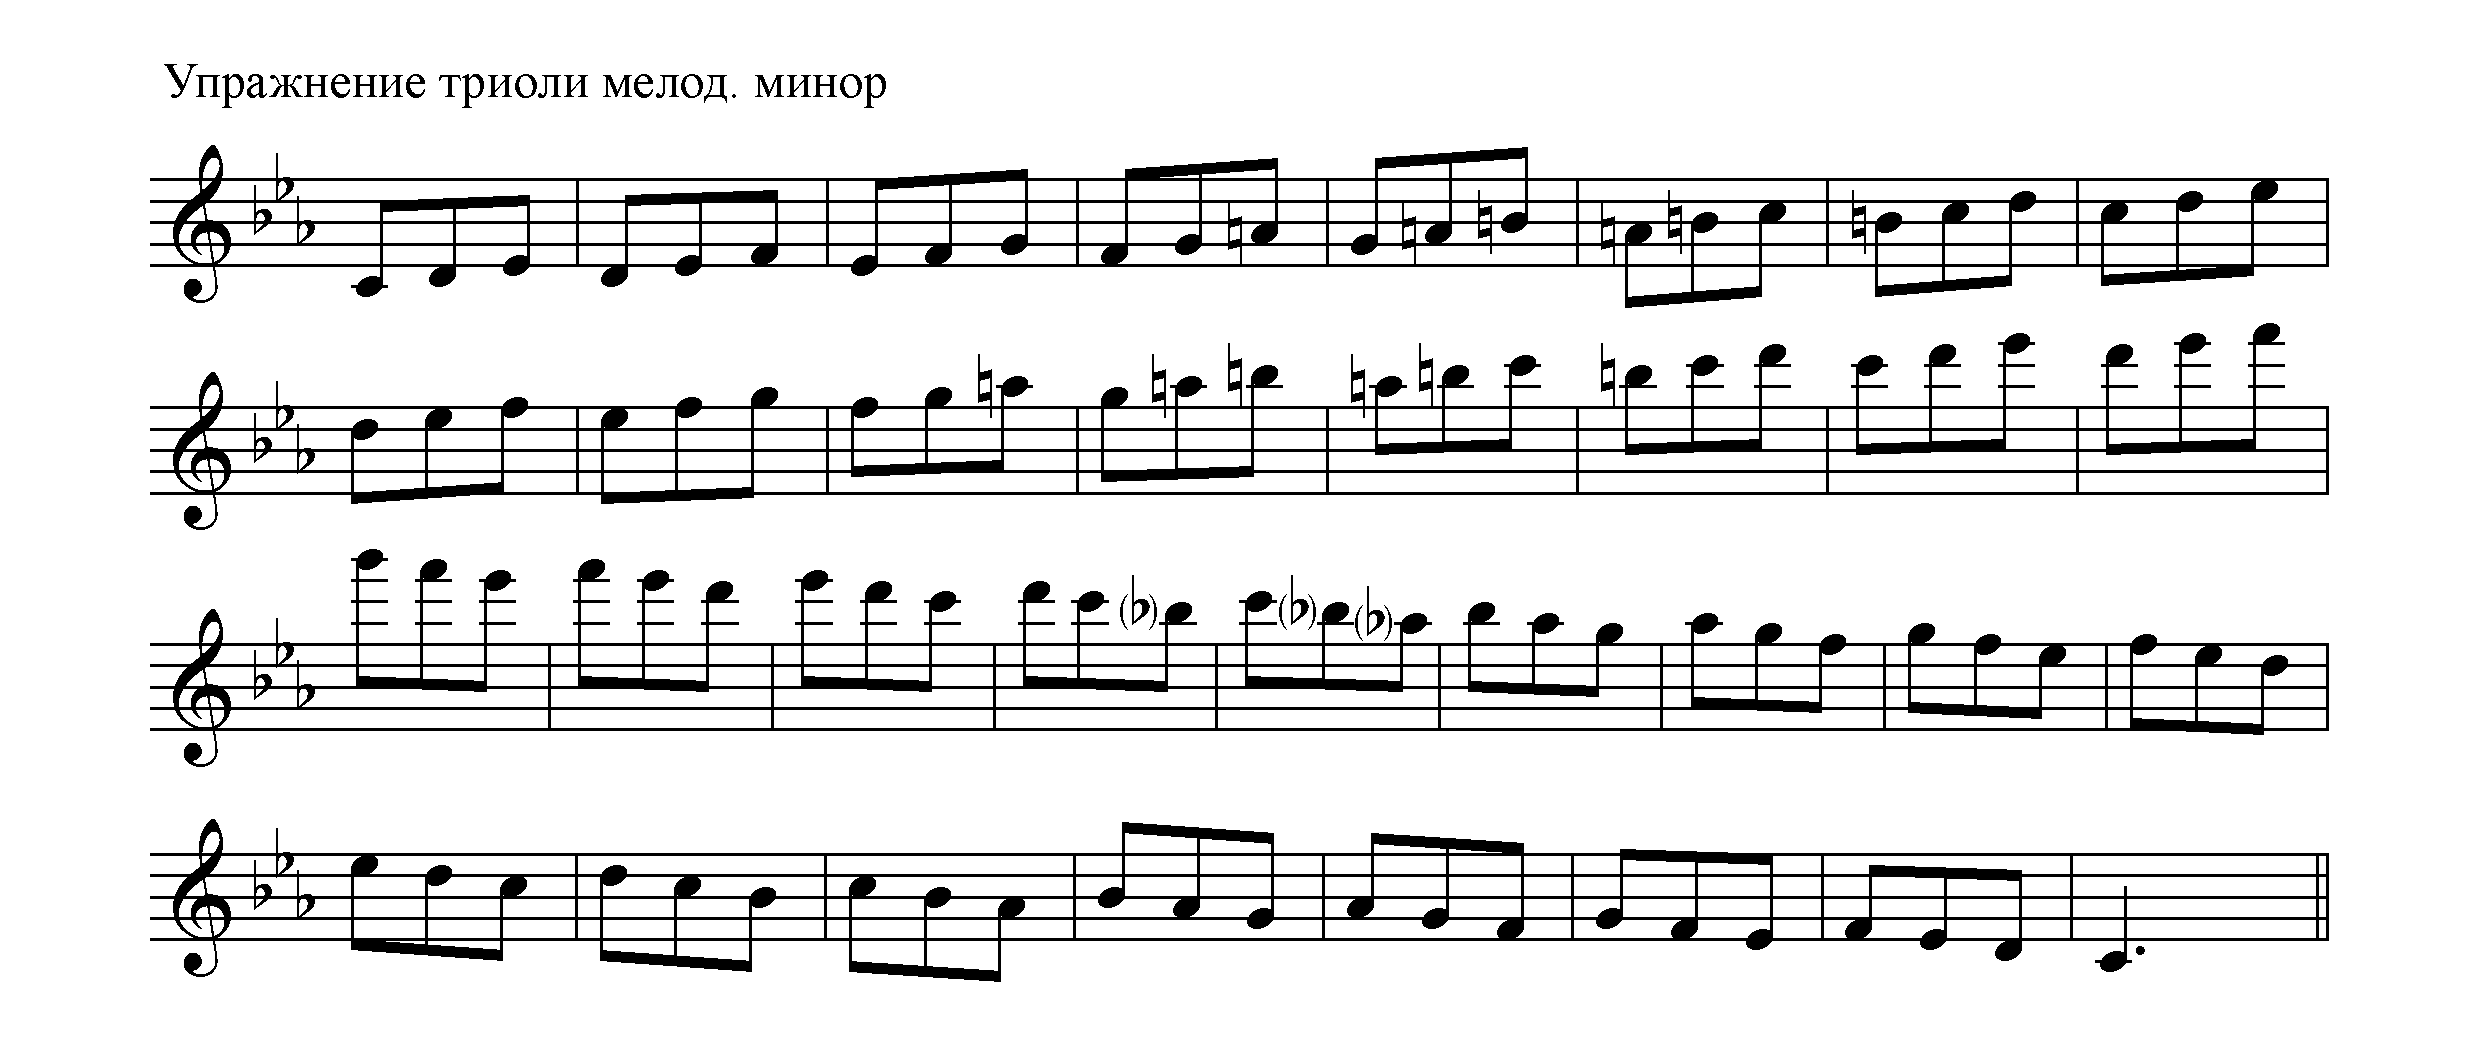 Упражнение c-moll мелод. триоли